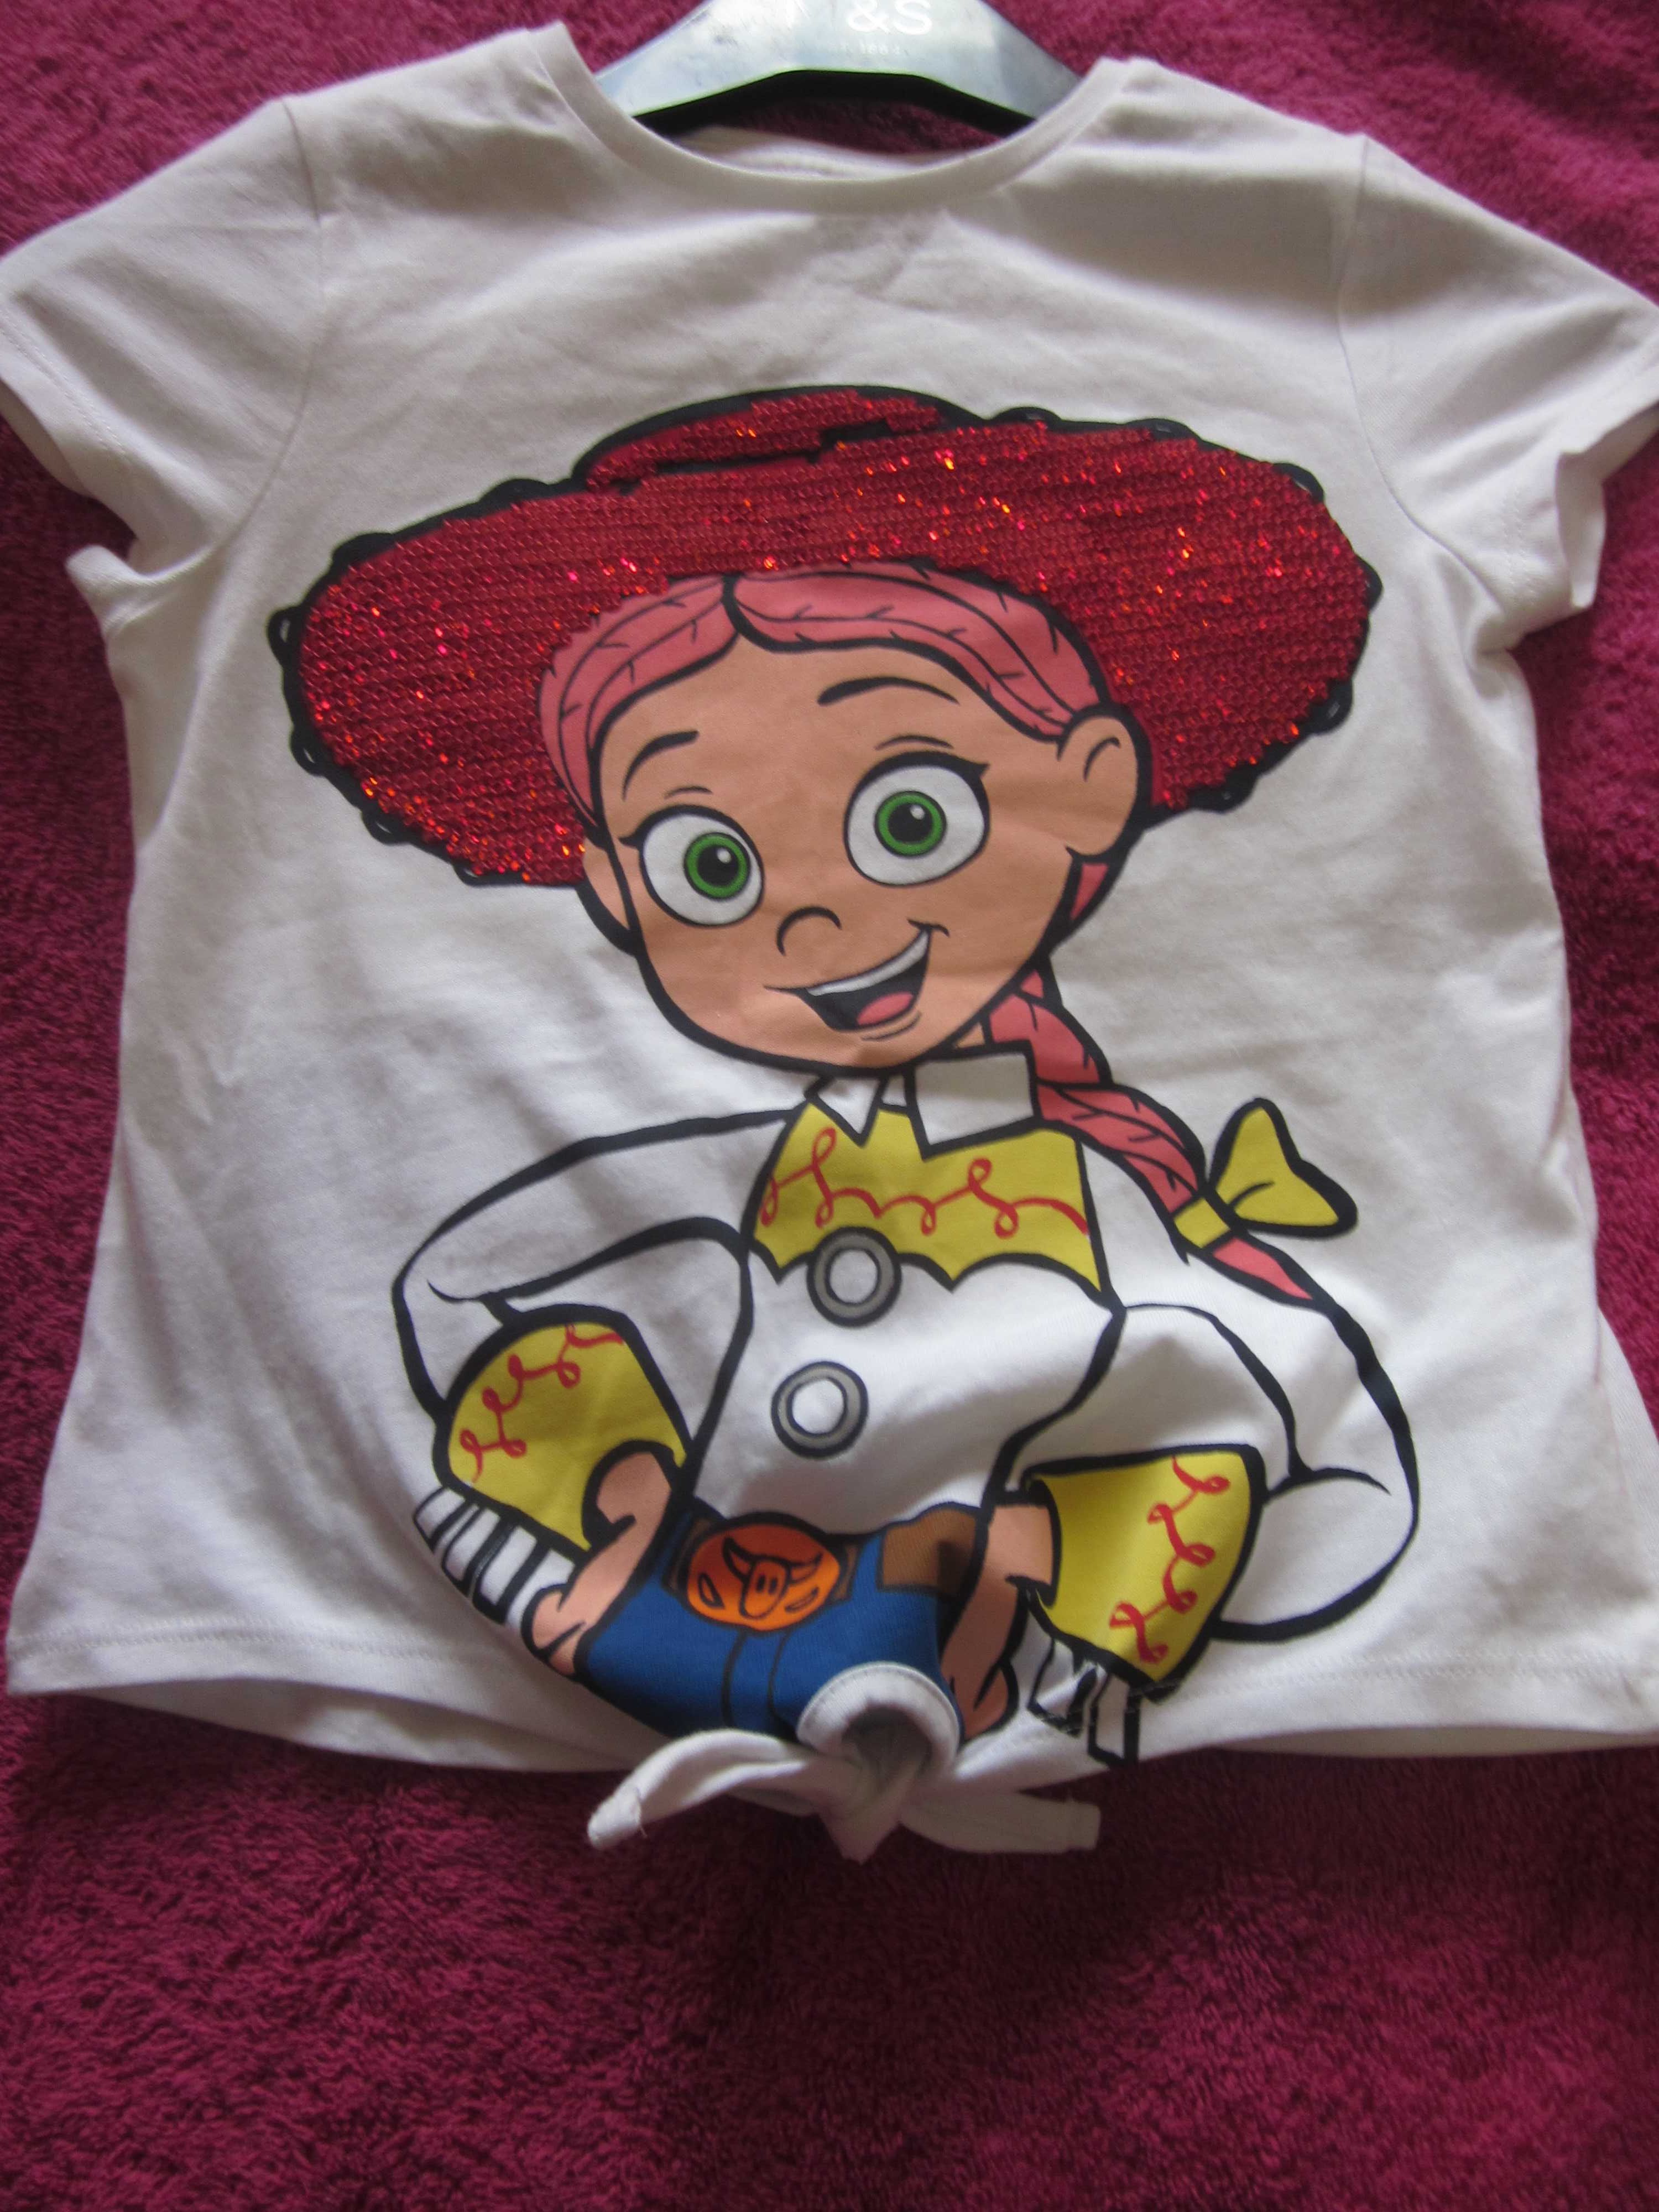 футболка disney на девочку 4-5 лет.шляпа расшита паетками).классная.